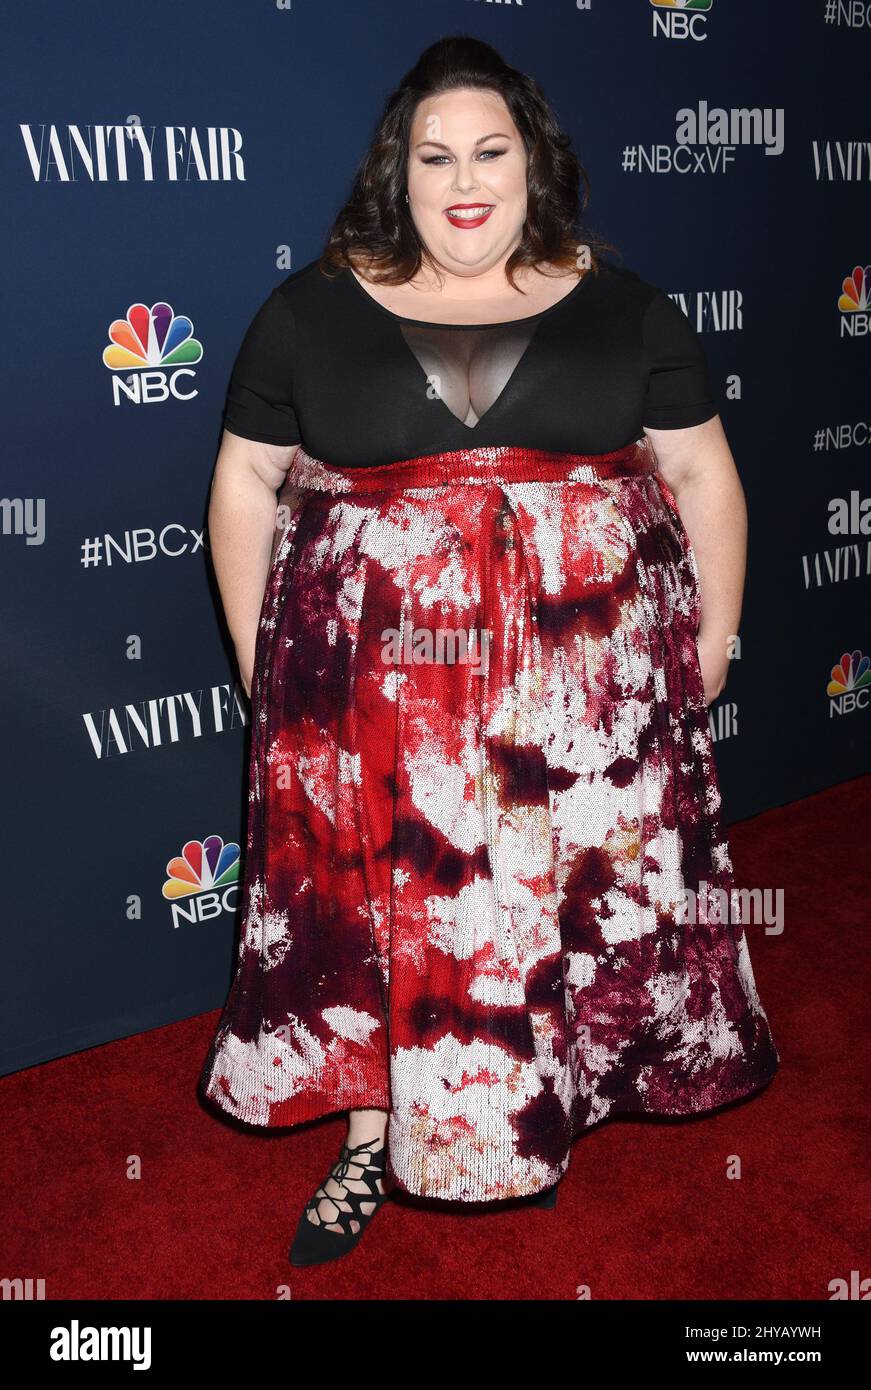 Chrissy Metz llega a la NBC y Vanity Fair brindis la temporada de televisión 2016-2017 celebrada en Neuehouse Hollywood Foto de stock